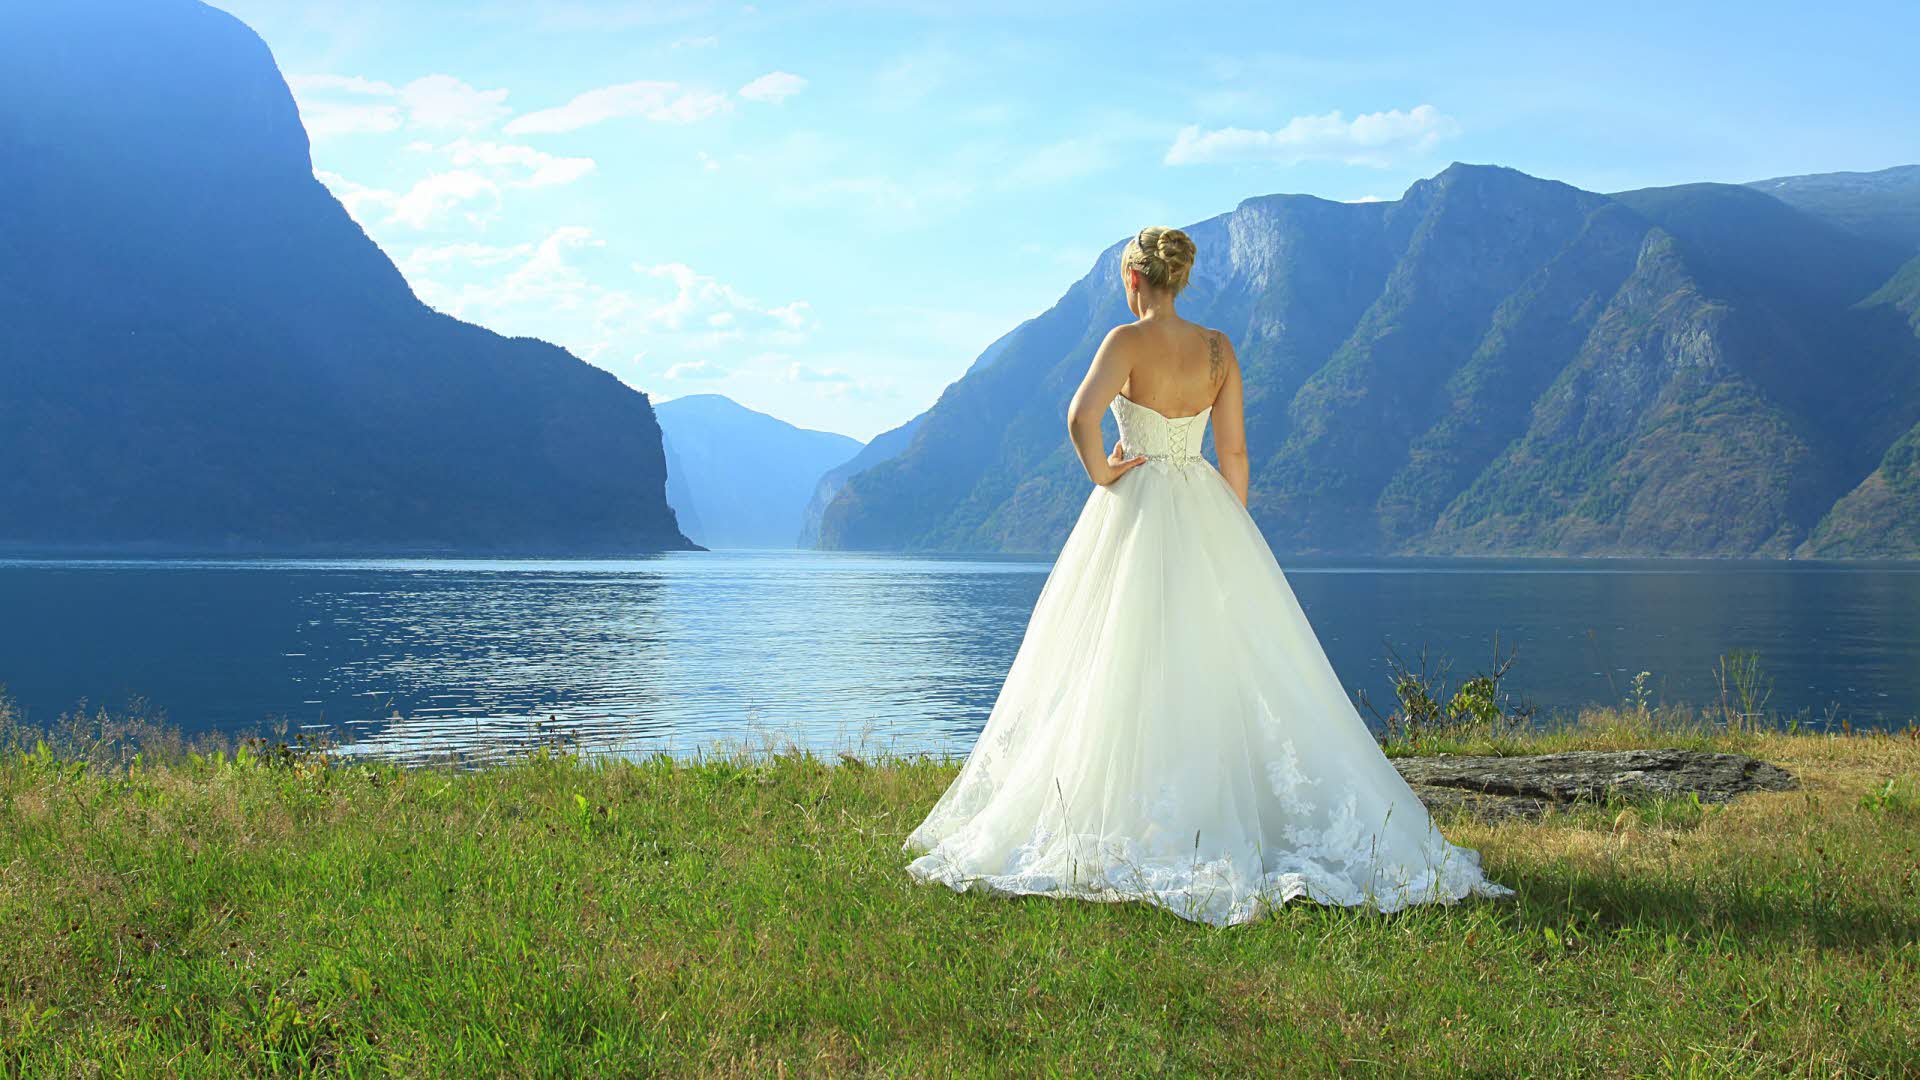 Une femme en longue robe de mariée blanche contemplant l’Aurlandsfjord, vue de dos.